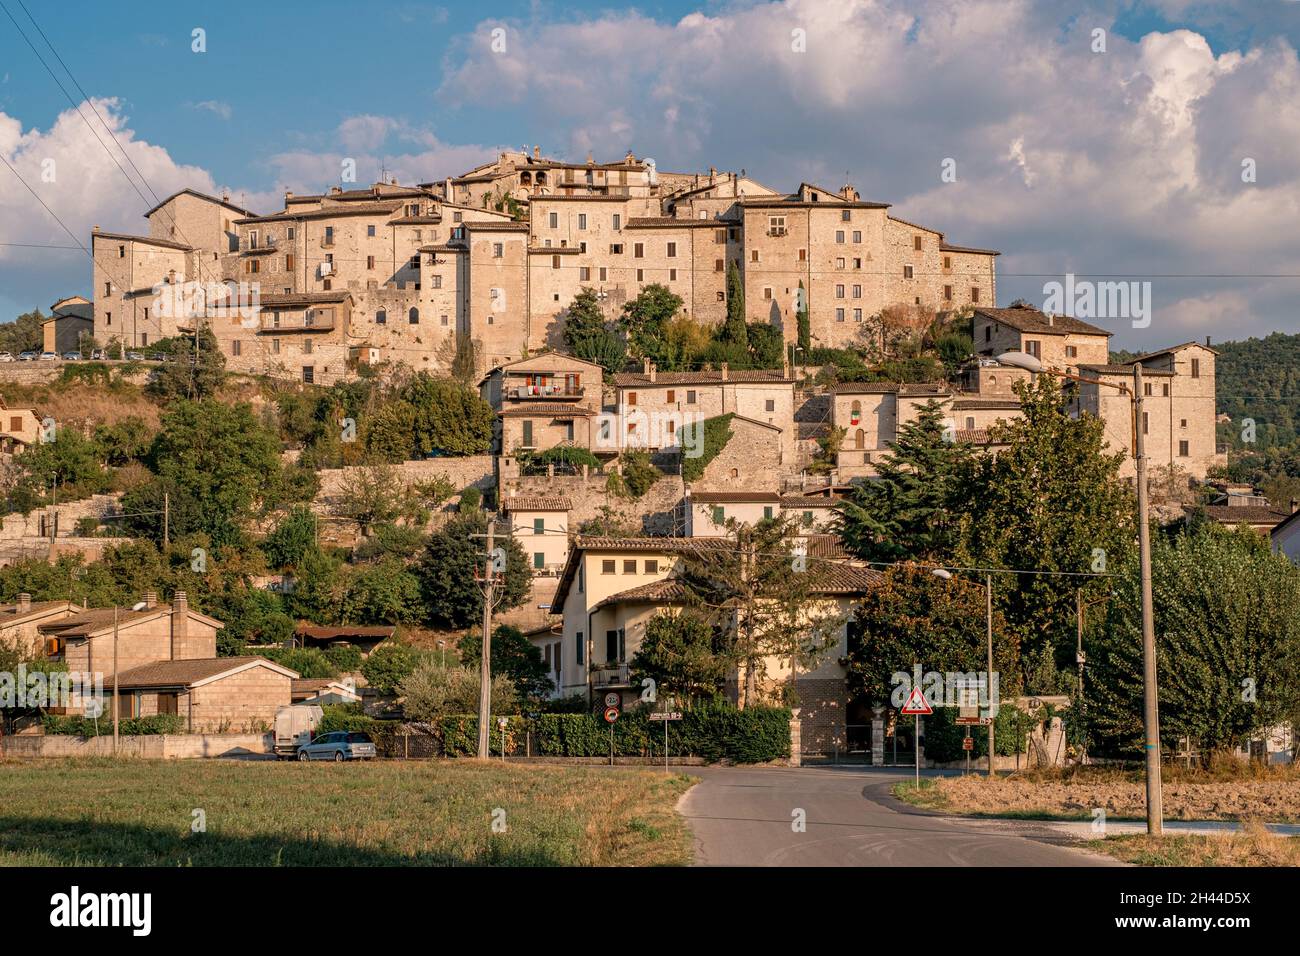 Casteldilago, mittelalterlicher Stadtteil in der Provinz Terni, Umbrien, Italien Stockfoto